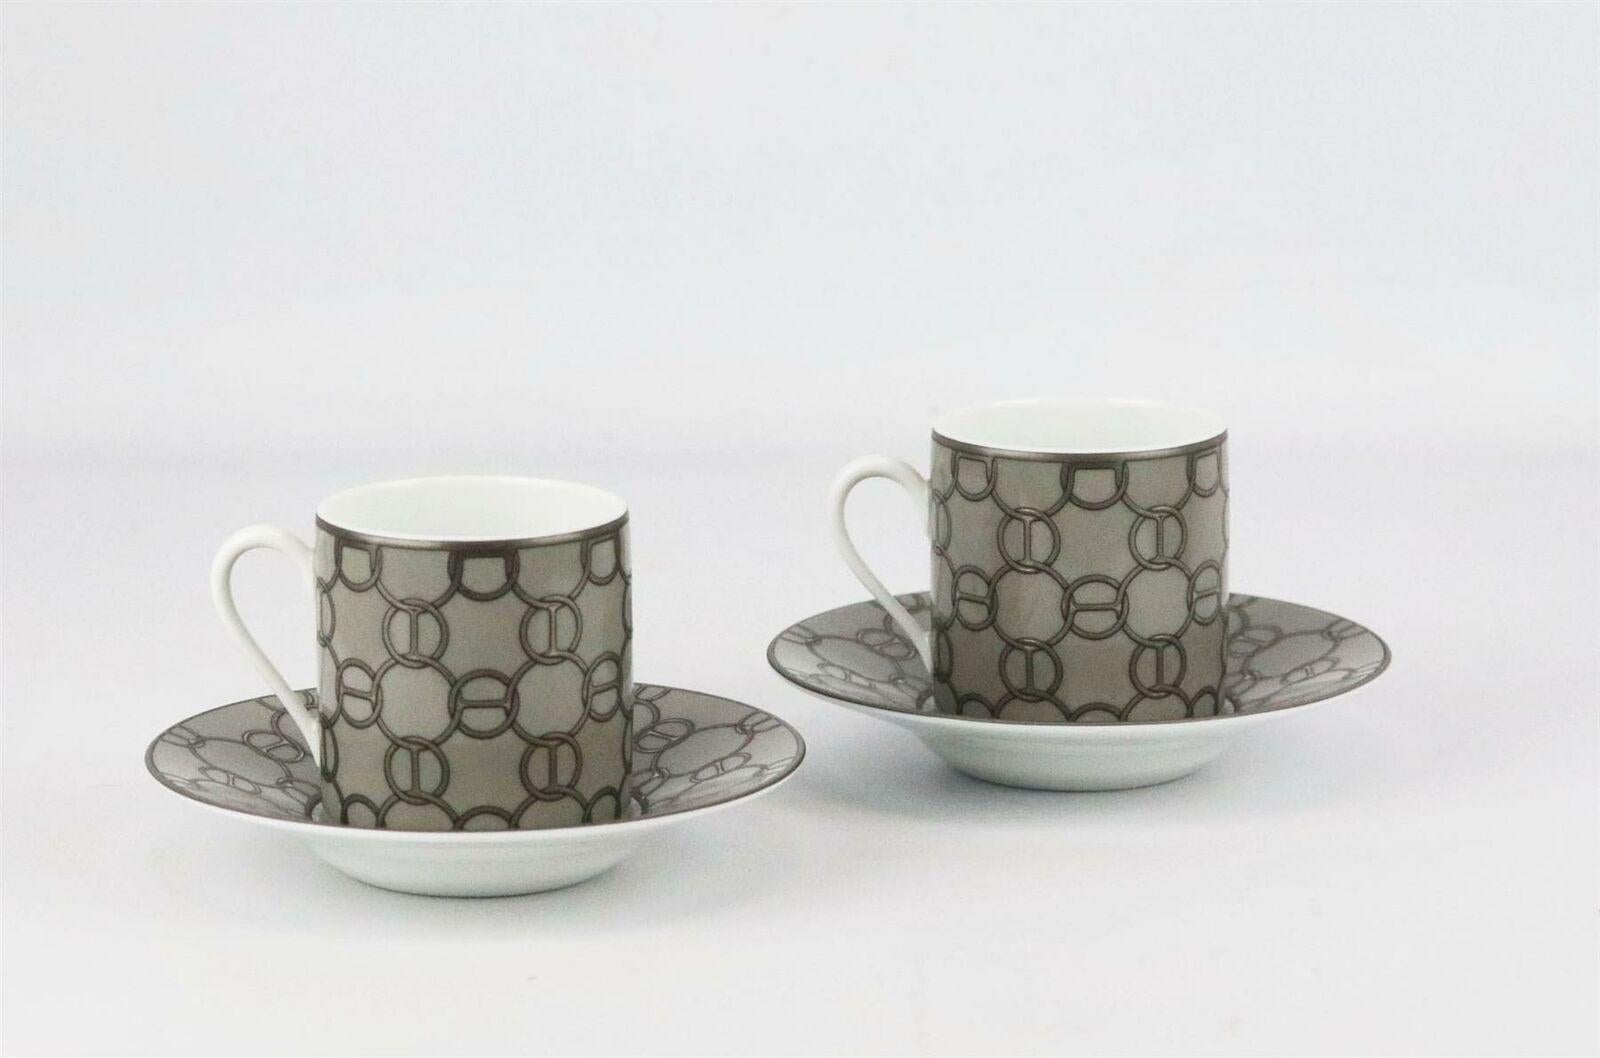 Ensemble de 2 tasses à café et soucoupes assorties Hermès Fil d'Argent en porcelaine grise, argentée et blanche, avec un motif de chaînette sur toute la surface, des accents dorés et le tampon de la marque sur le fond.
Ne vient pas avec la